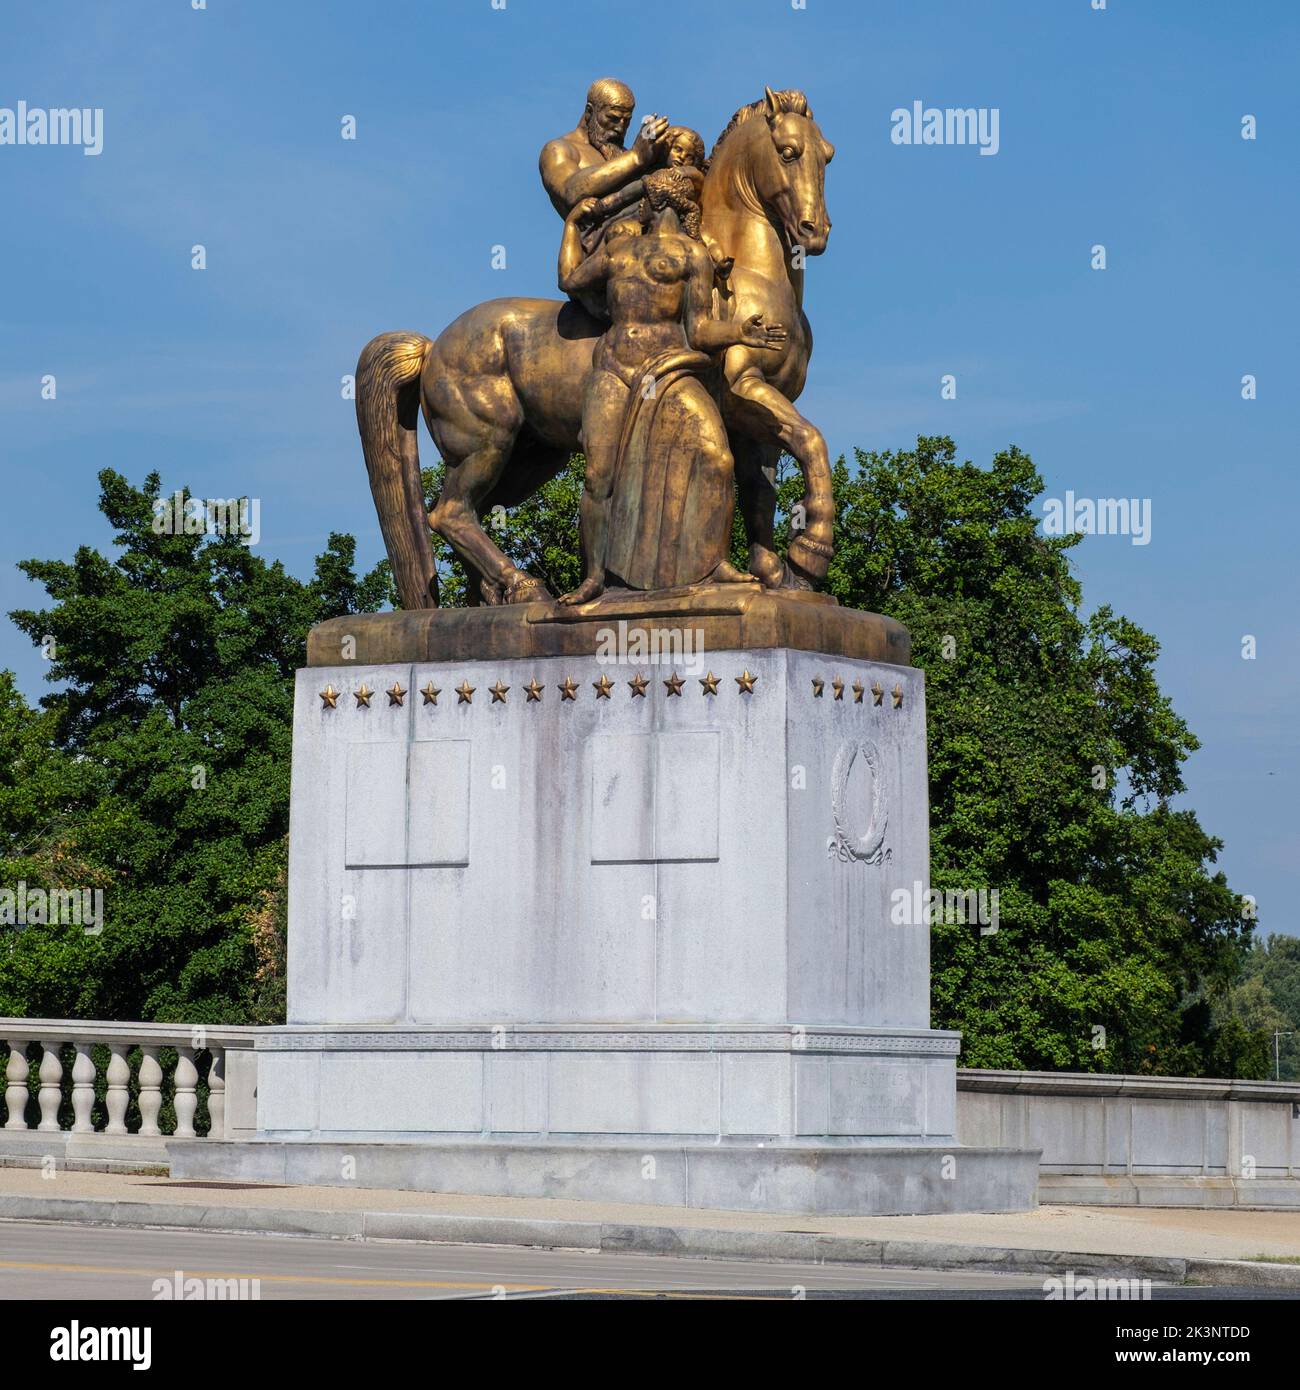 Sacrifice, l'une des statues de l'art de la guerre à l'extrémité est du pont commémoratif d'Arlington. Sculpteur, Leo Friedlander. Washington, DC, États-Unis. Banque D'Images